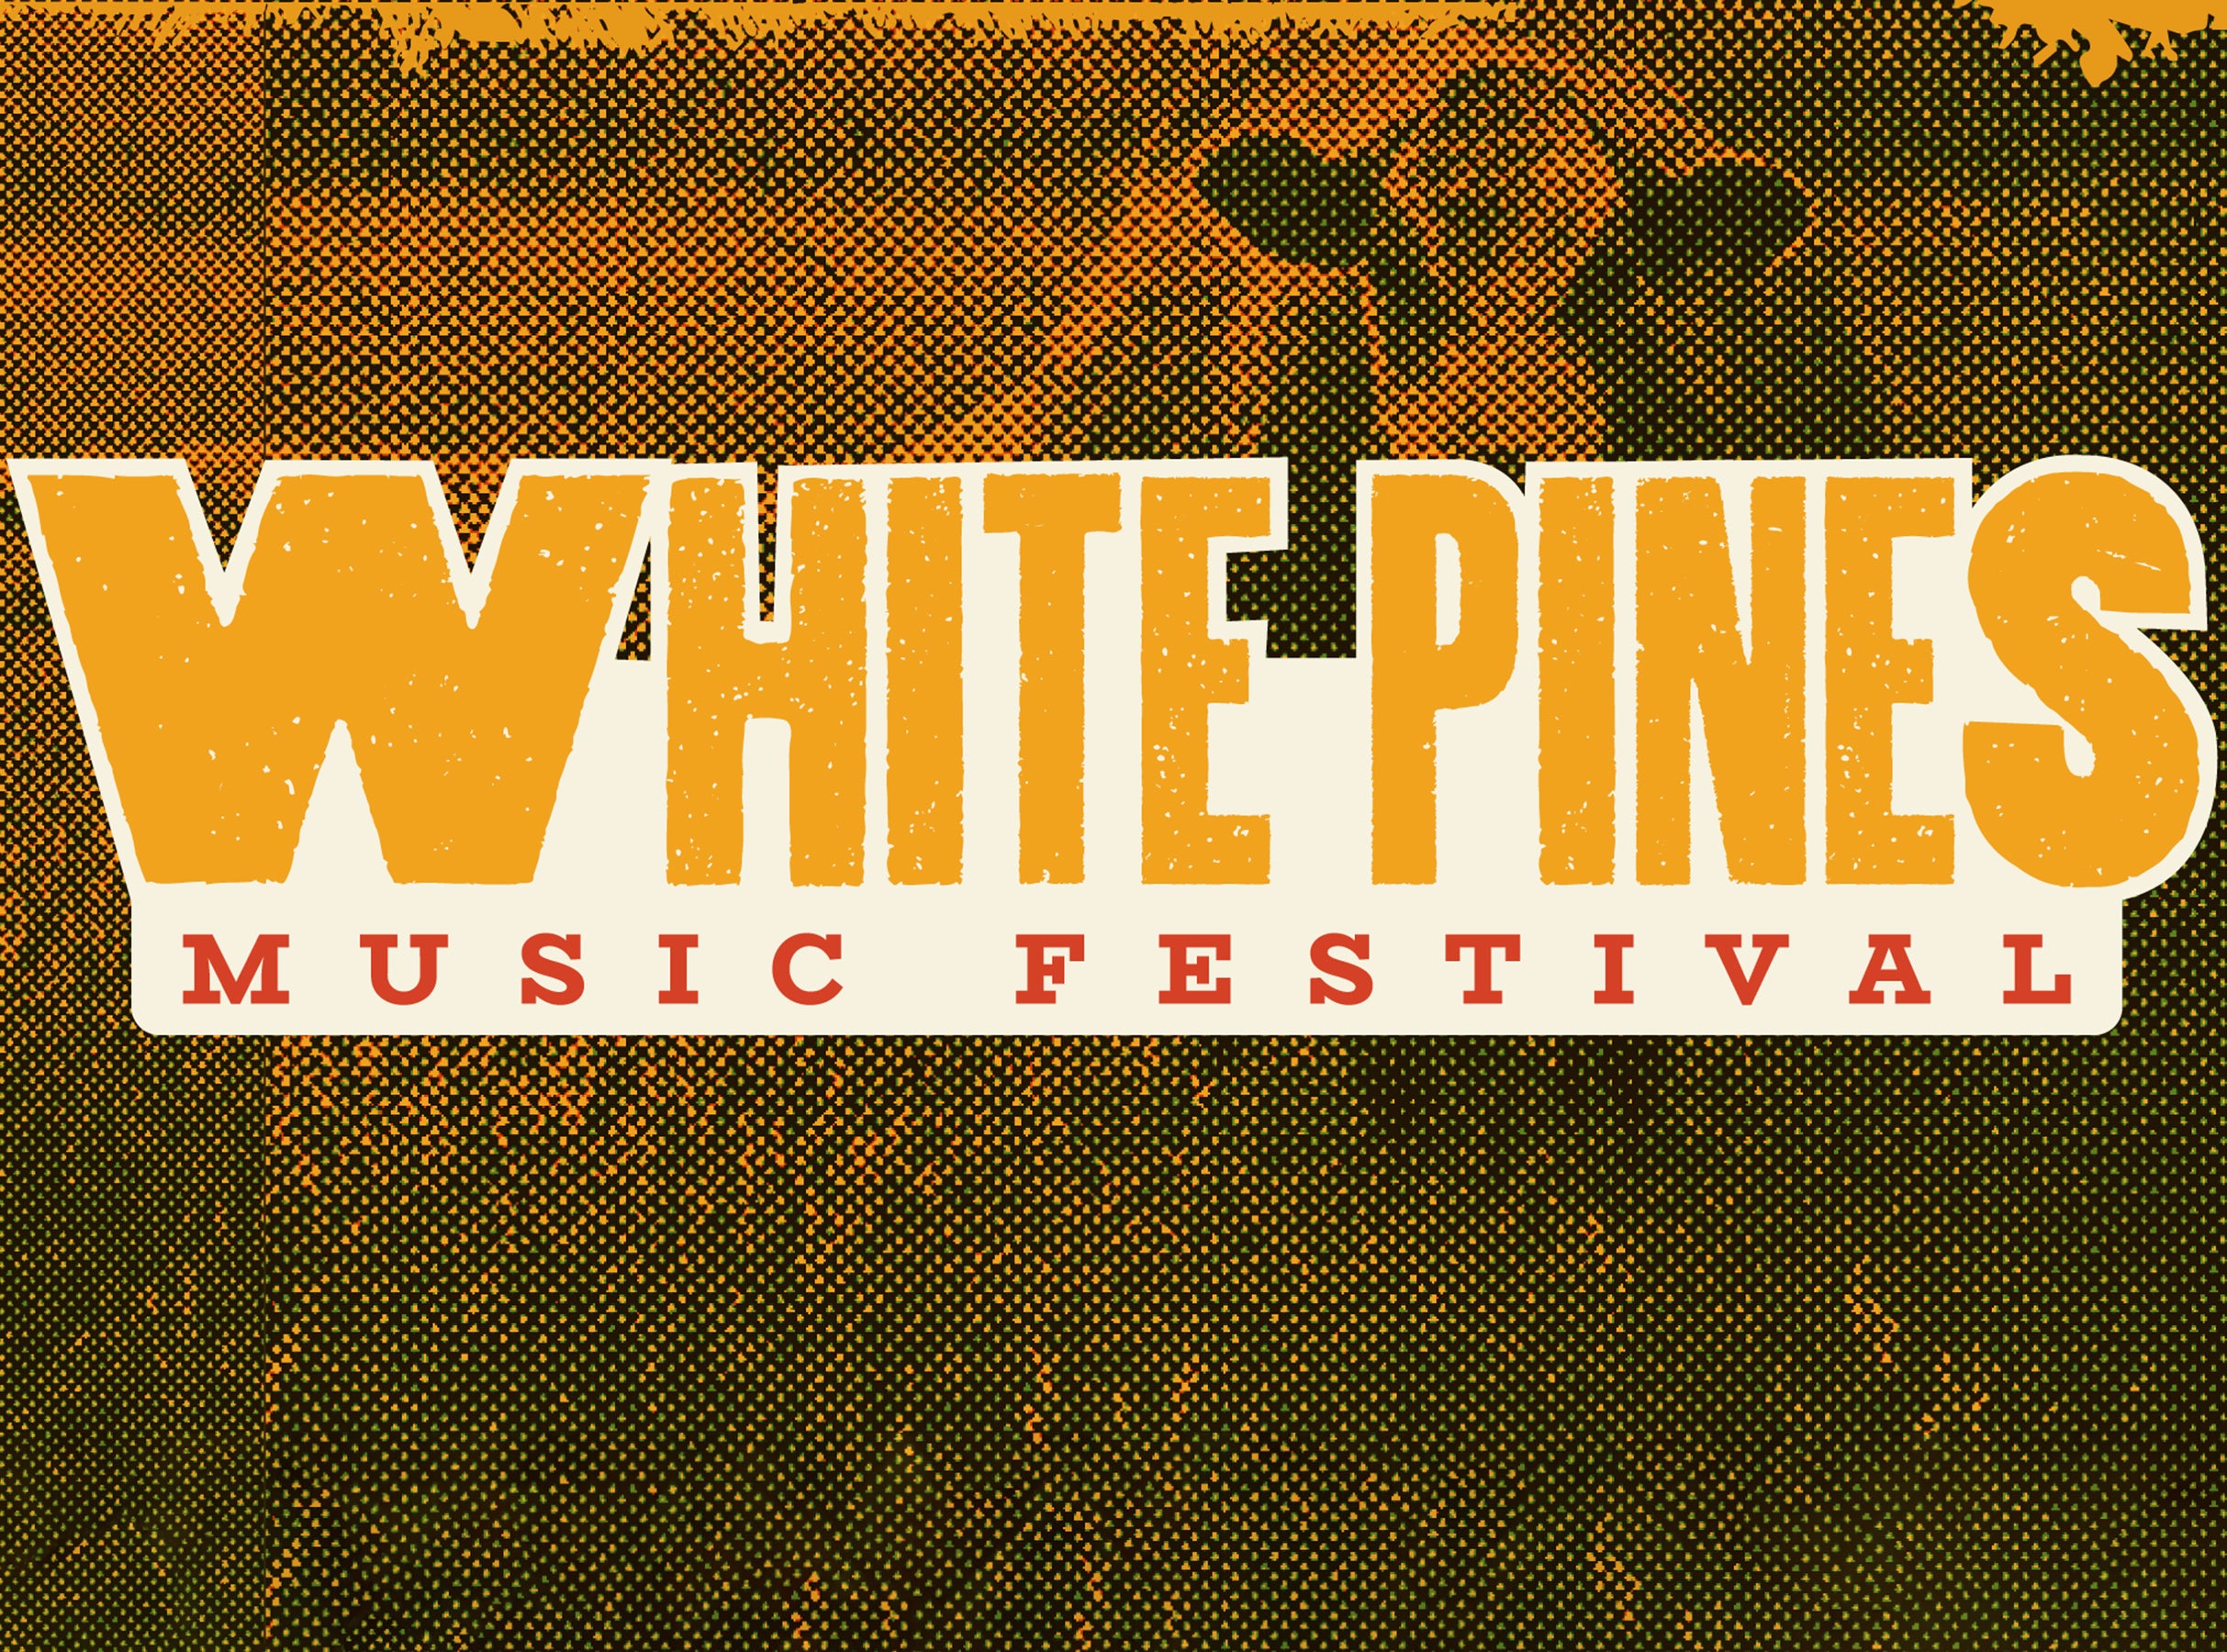 White Pines Music Festival presale information on freepresalepasswords.com